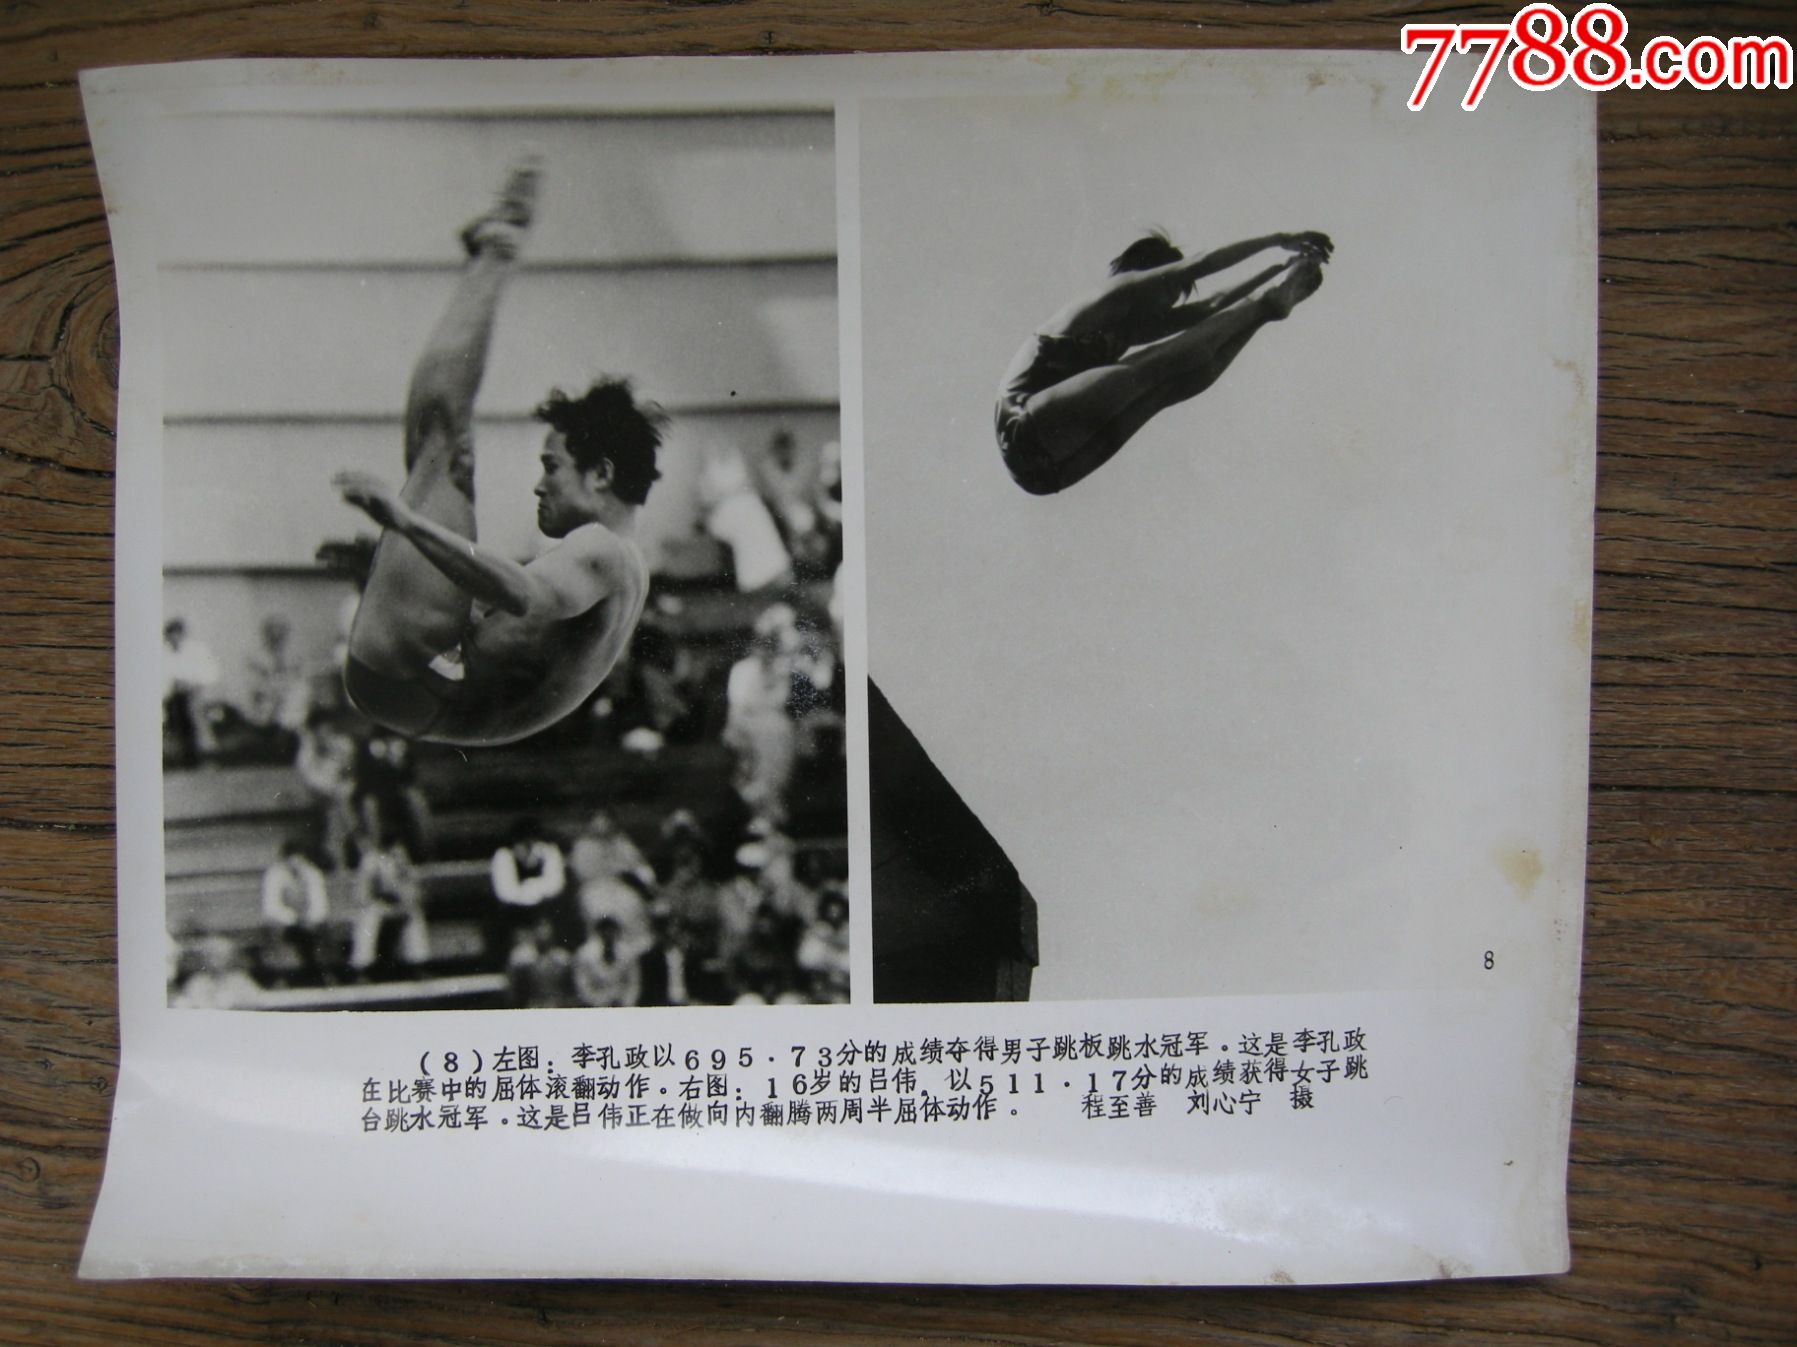 超大尺寸:1982年第九届亚运会,李孔政获男子男子跳板跳水金牌;吕伟获